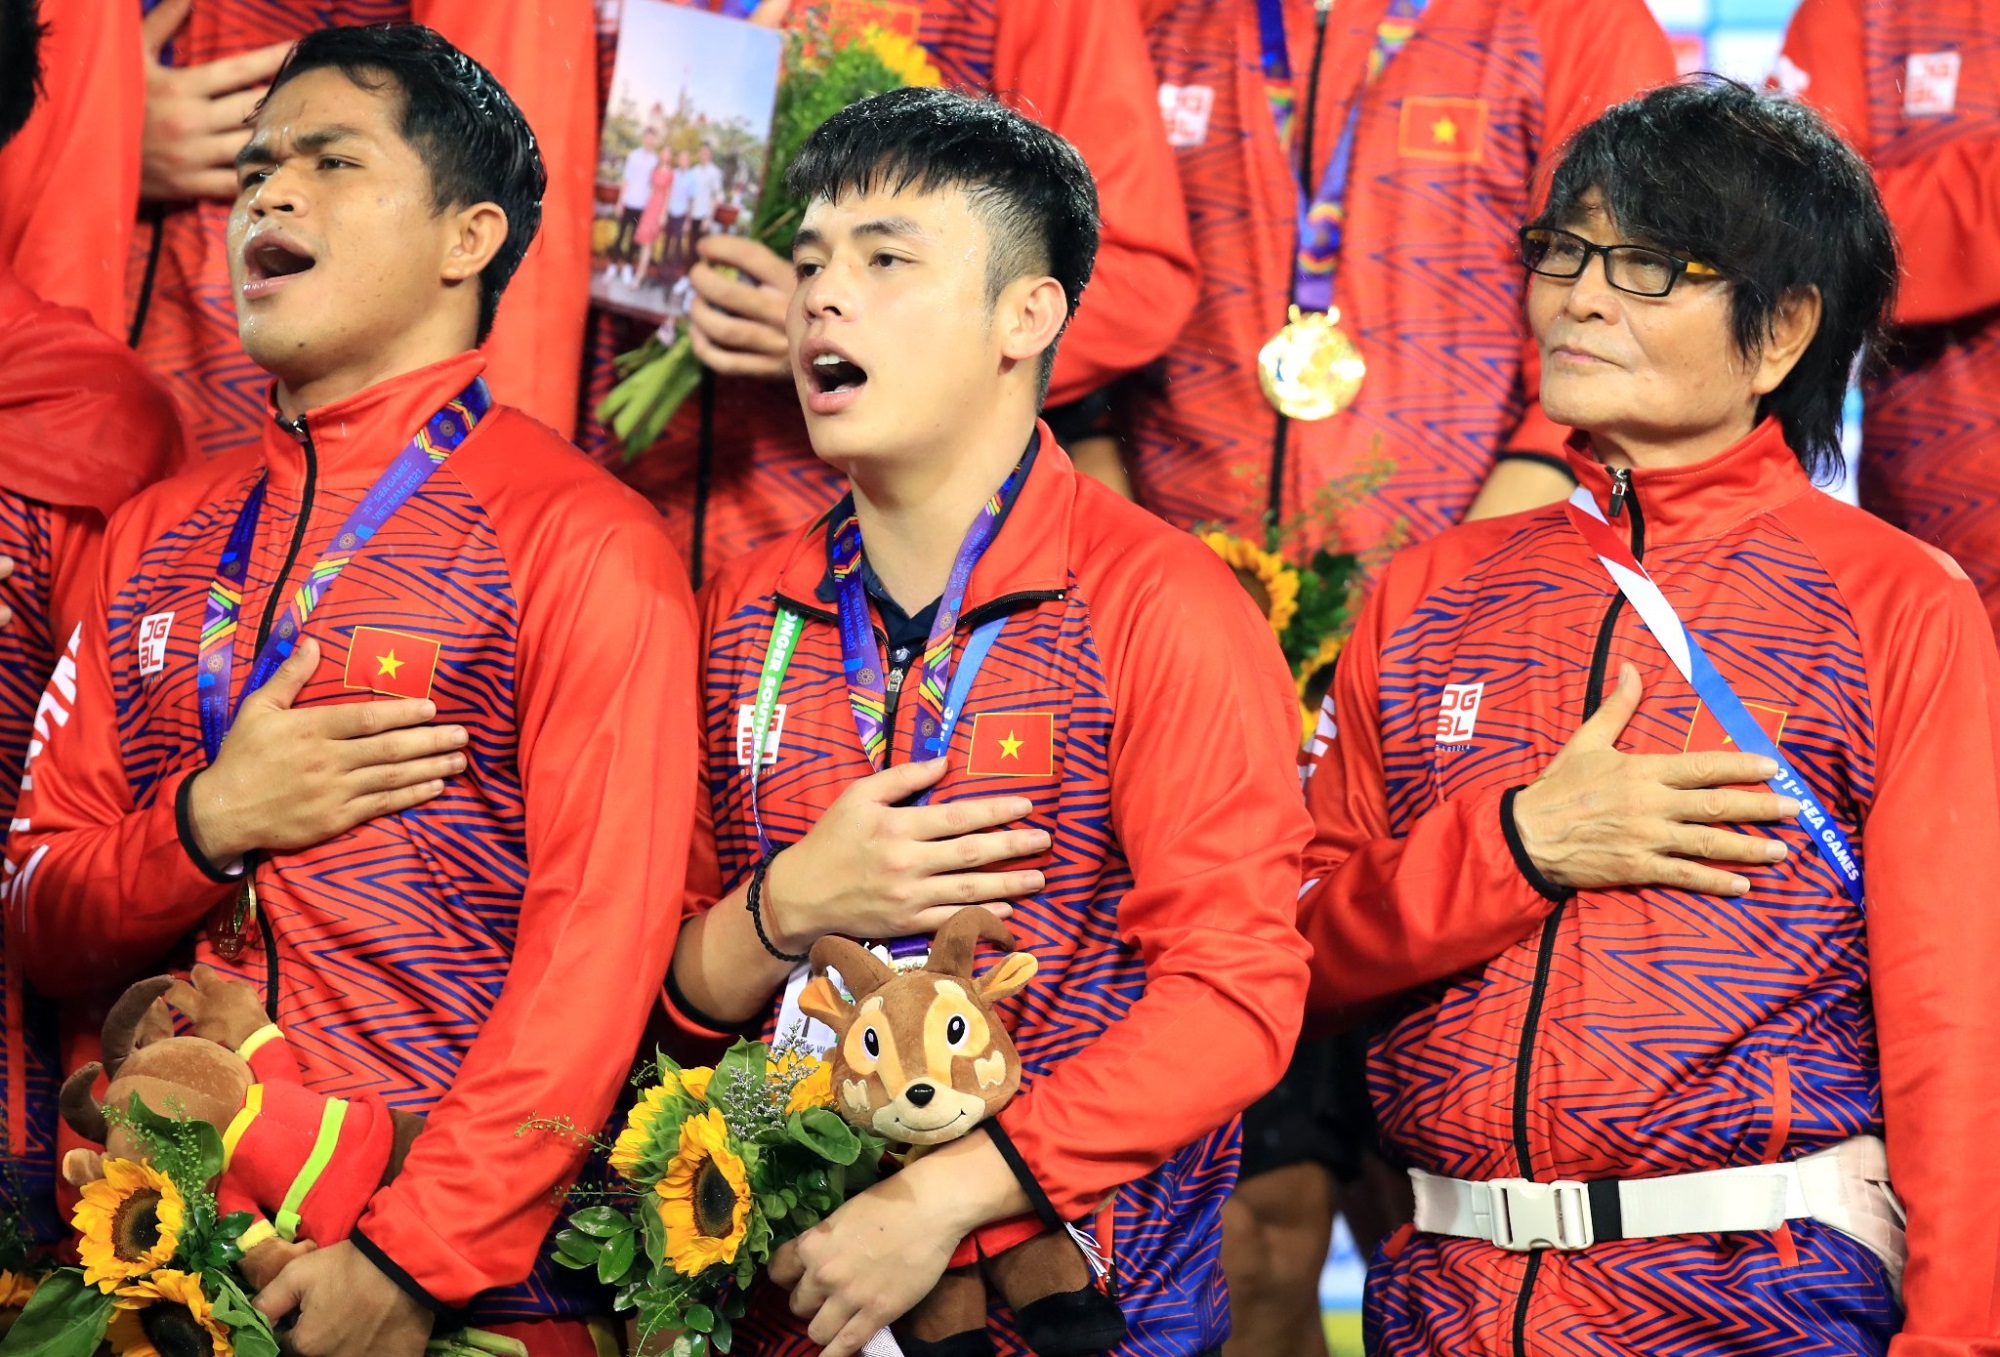 Xôn xao thông tin bác sĩ Choi không nhận huy chương vàng cùng đội tuyển U23 Việt Nam, người hâm mộ bày tỏ 'Phải có cho bác vì bác xứng đáng' - Ảnh 2